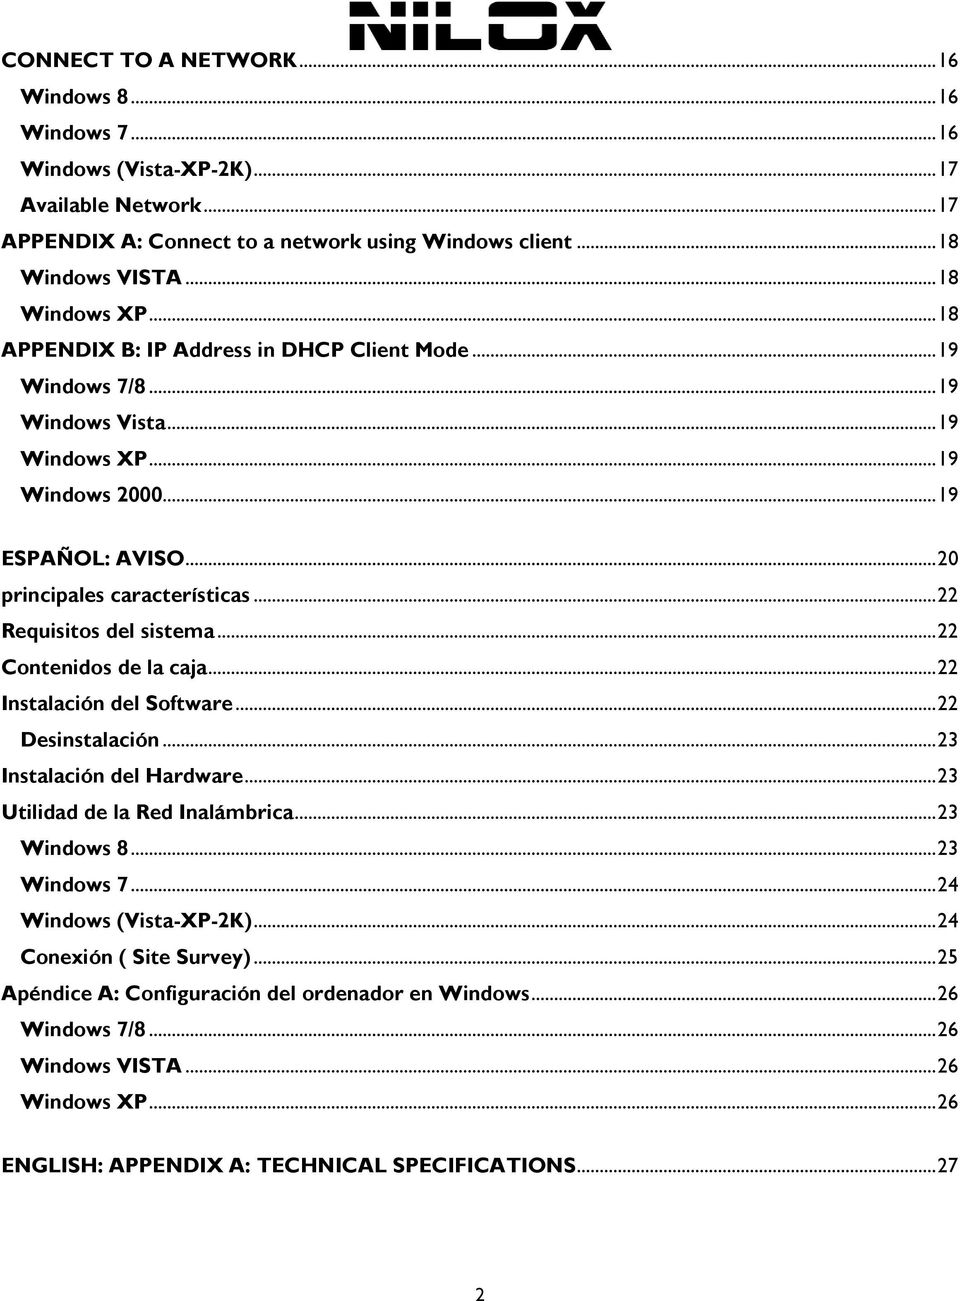 .. 22 Requisitos del sistema... 22 Contenidos de la caja... 22 Instalación del Software... 22 Desinstalación... 23 Instalación del Hardware... 23 Utilidad de la Red Inalámbrica... 23 Windows 8.